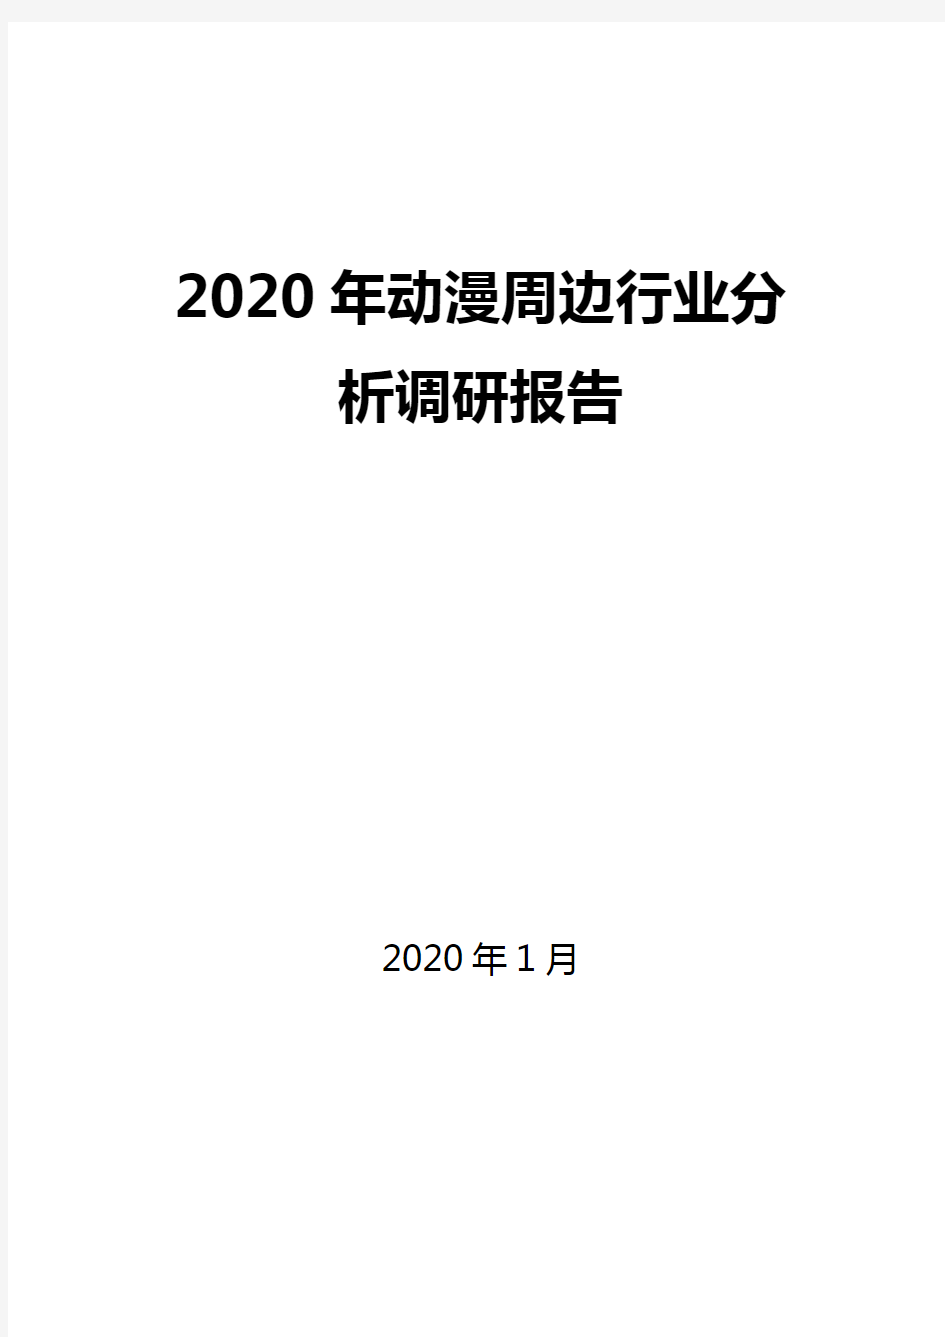 2020年动漫周边行业分析调研报告